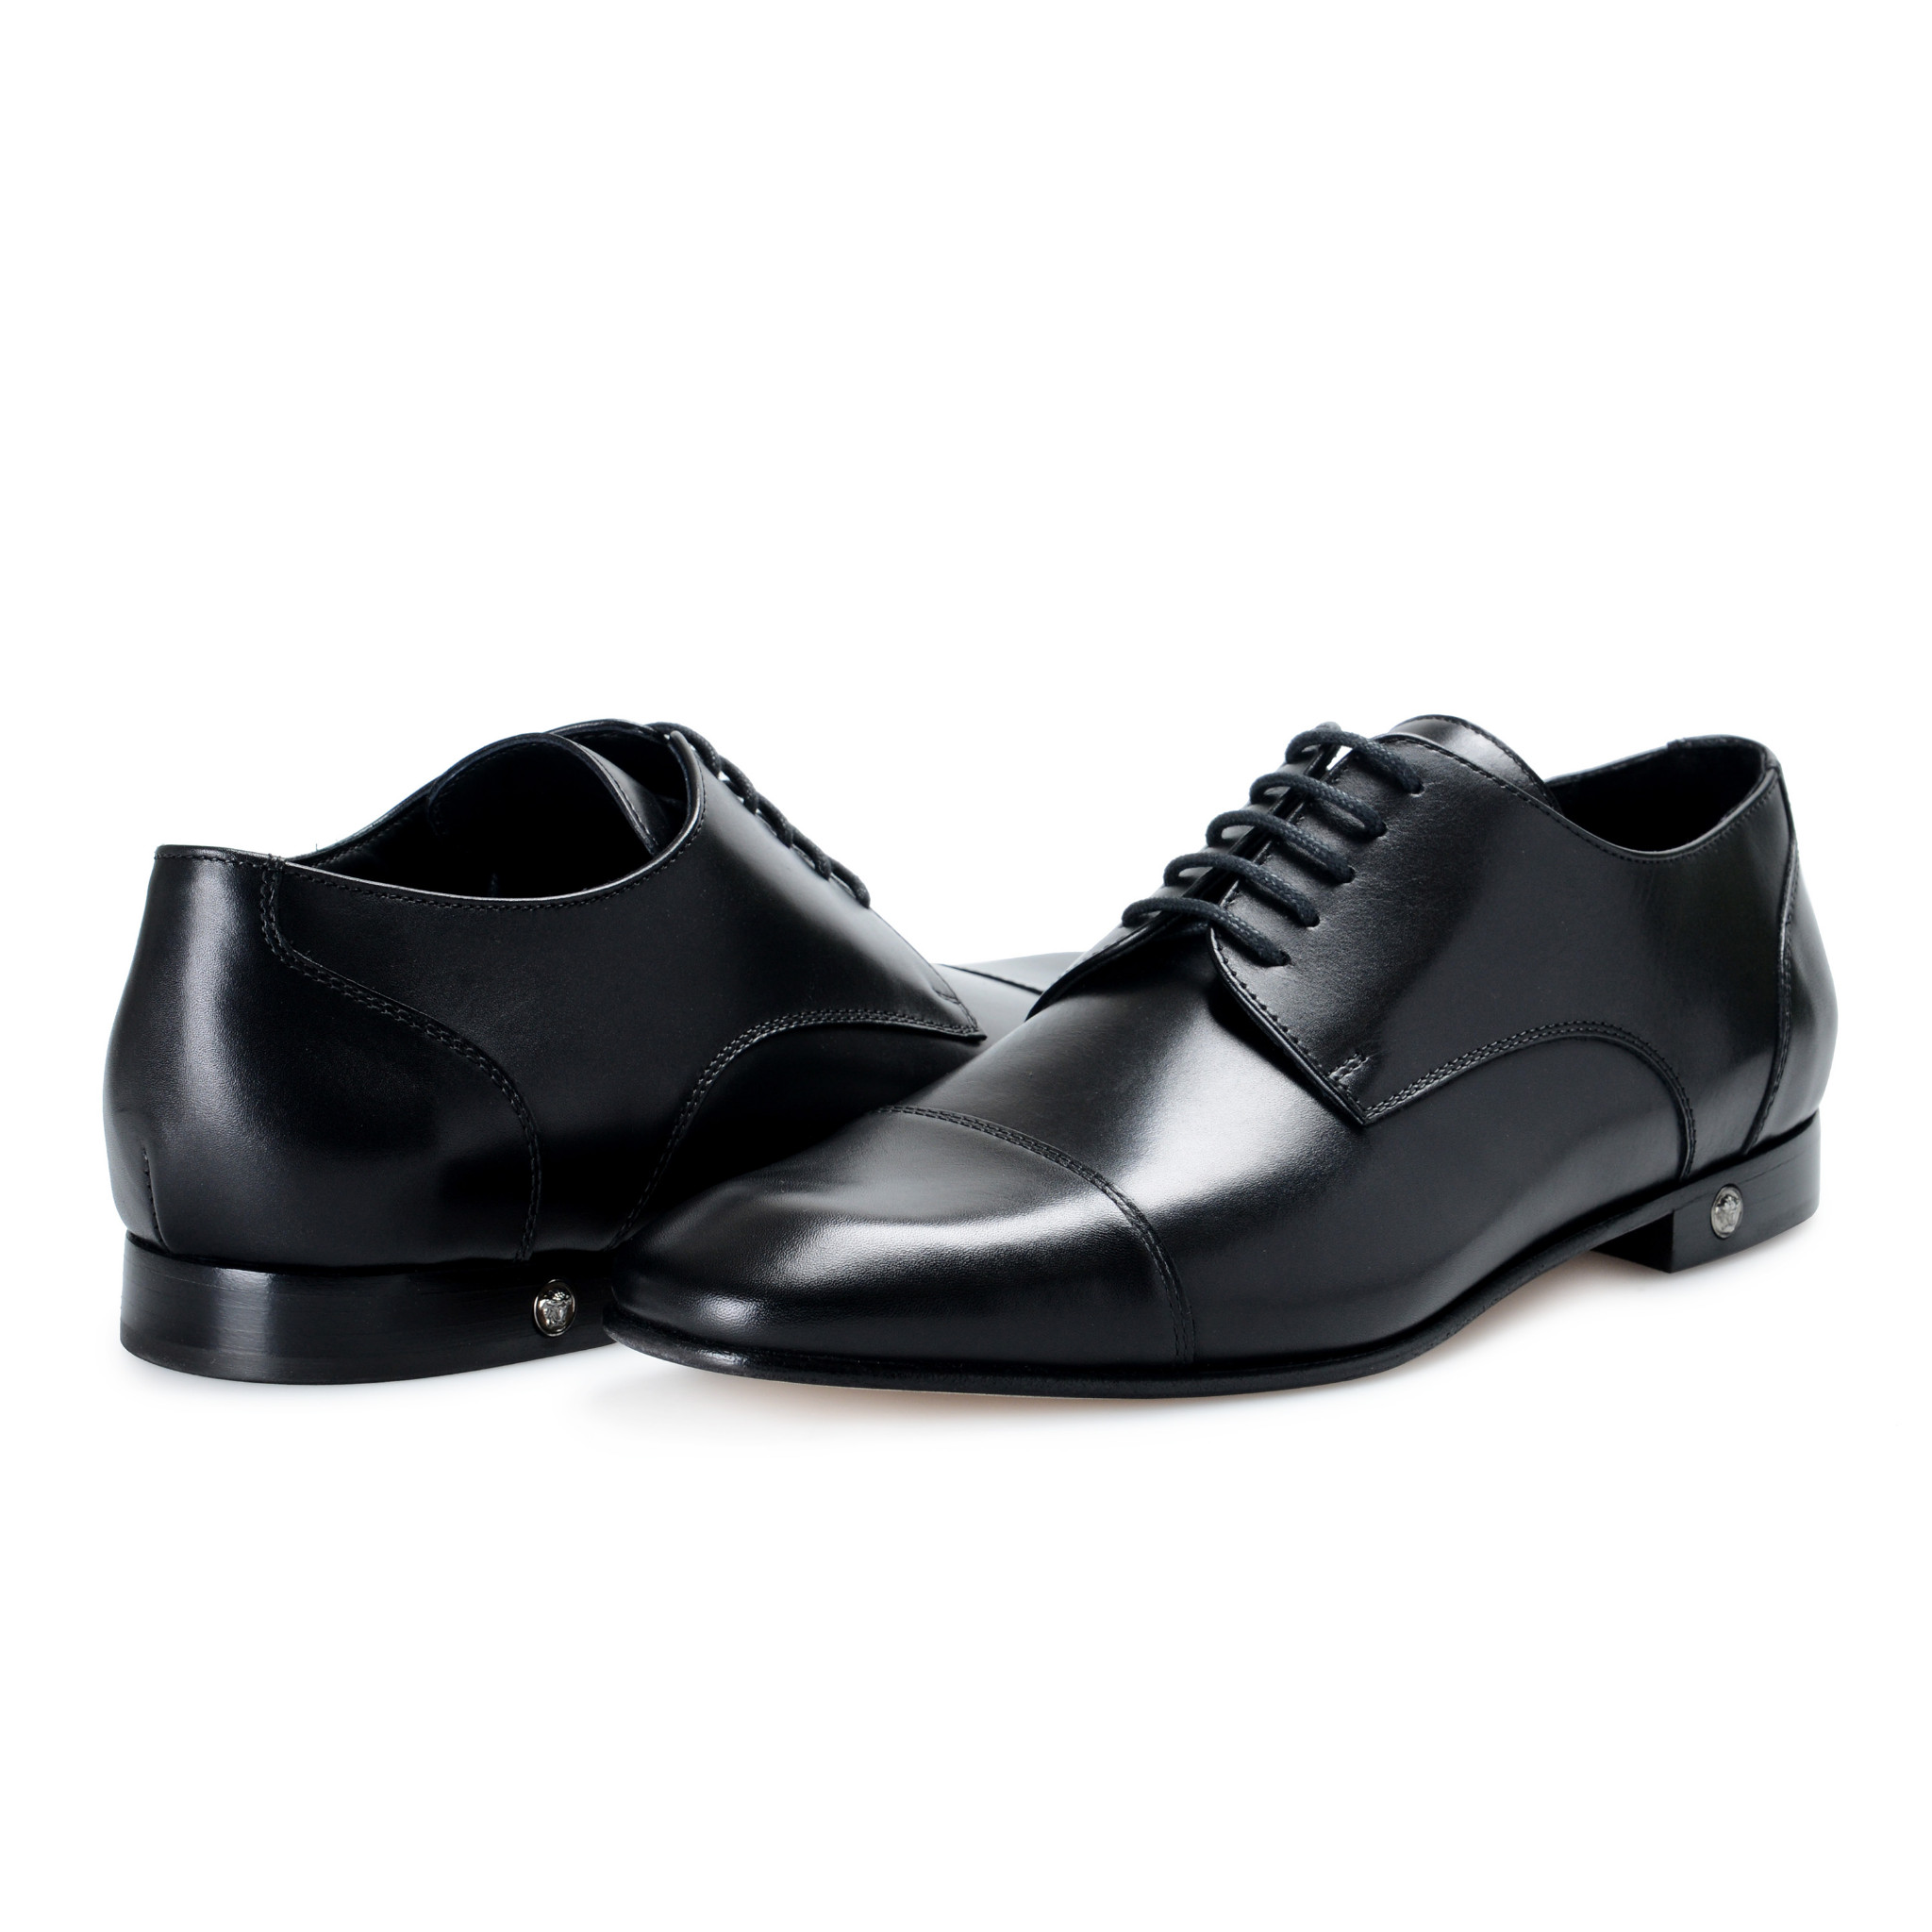 versace men's dress shoes